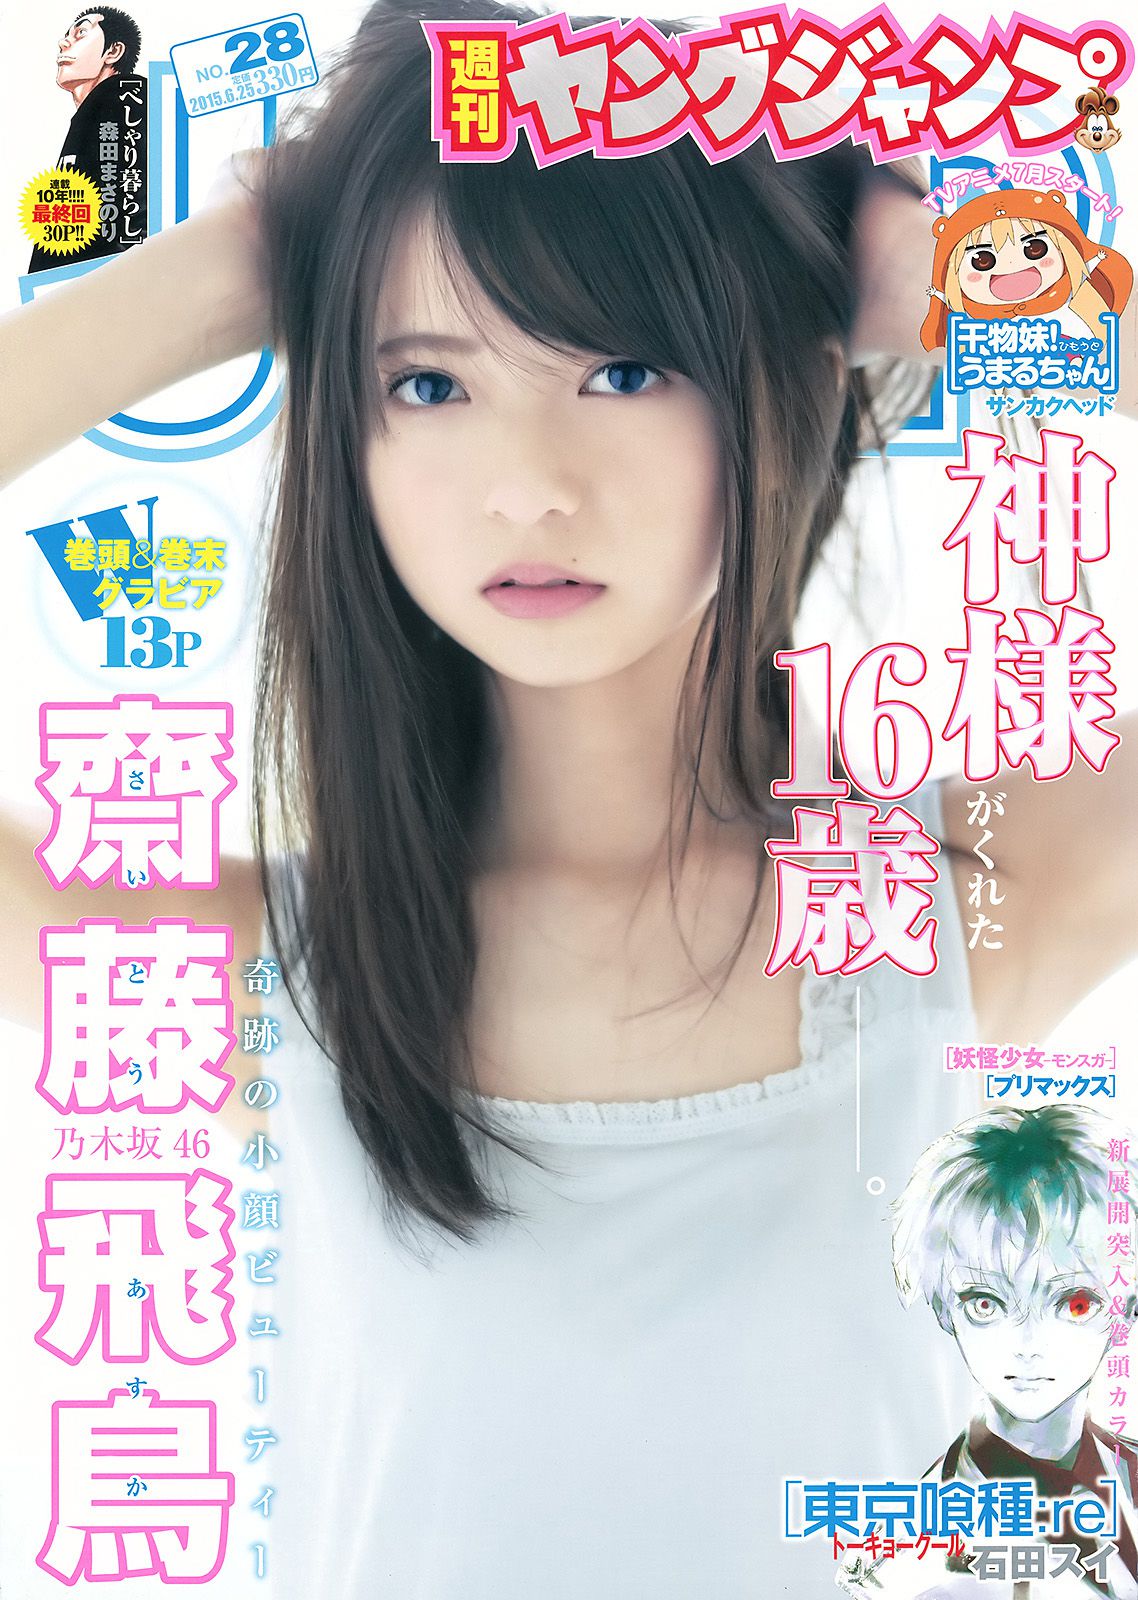 齋藤飛鳥 結城ちか [Weekly Young Jump] 2015年No.28 写真杂志1